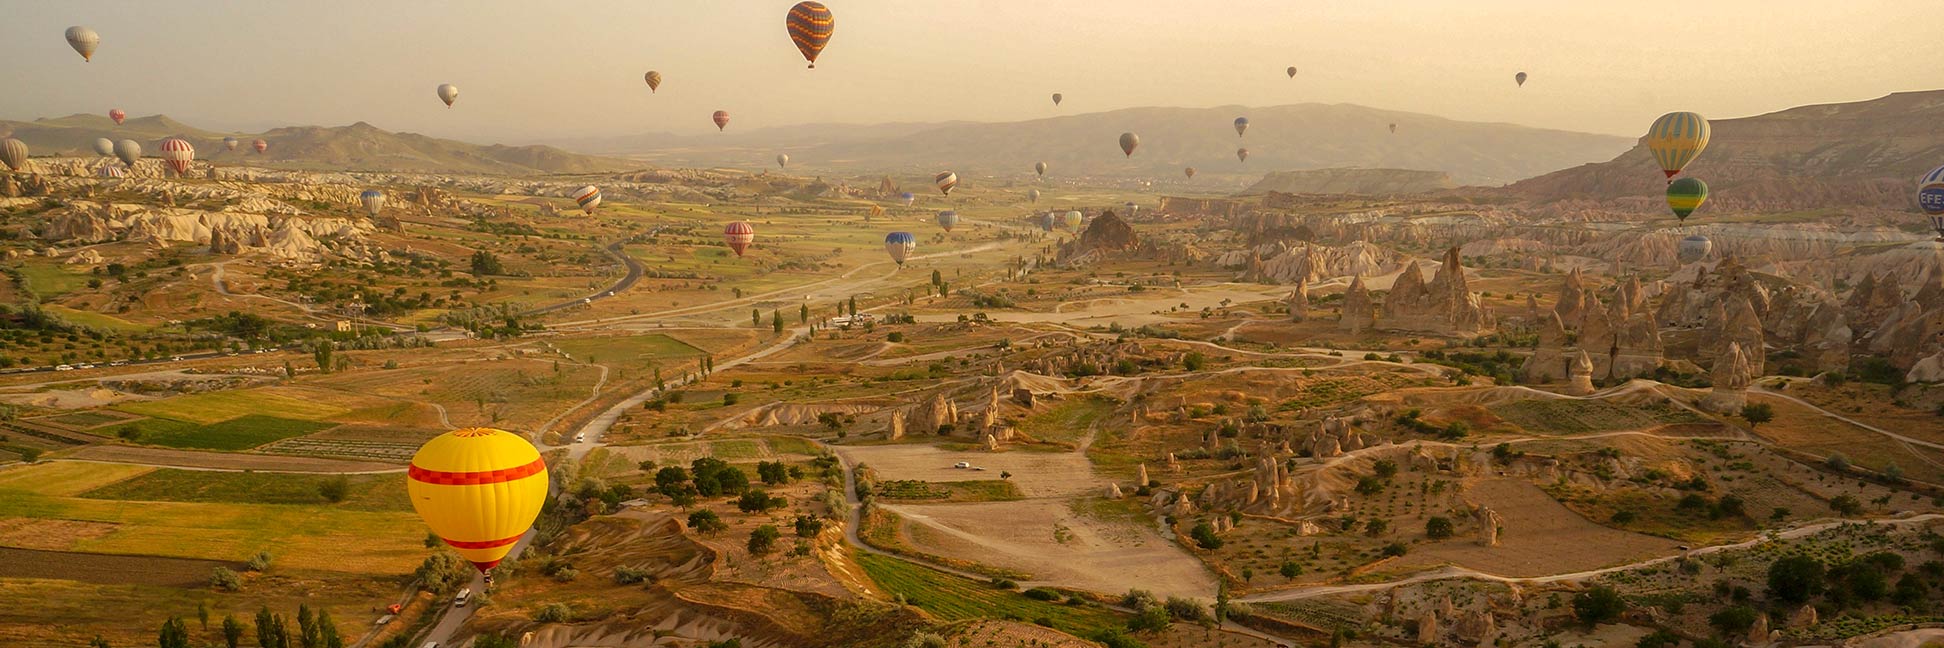 Balloons over Göreme in Cappadocia